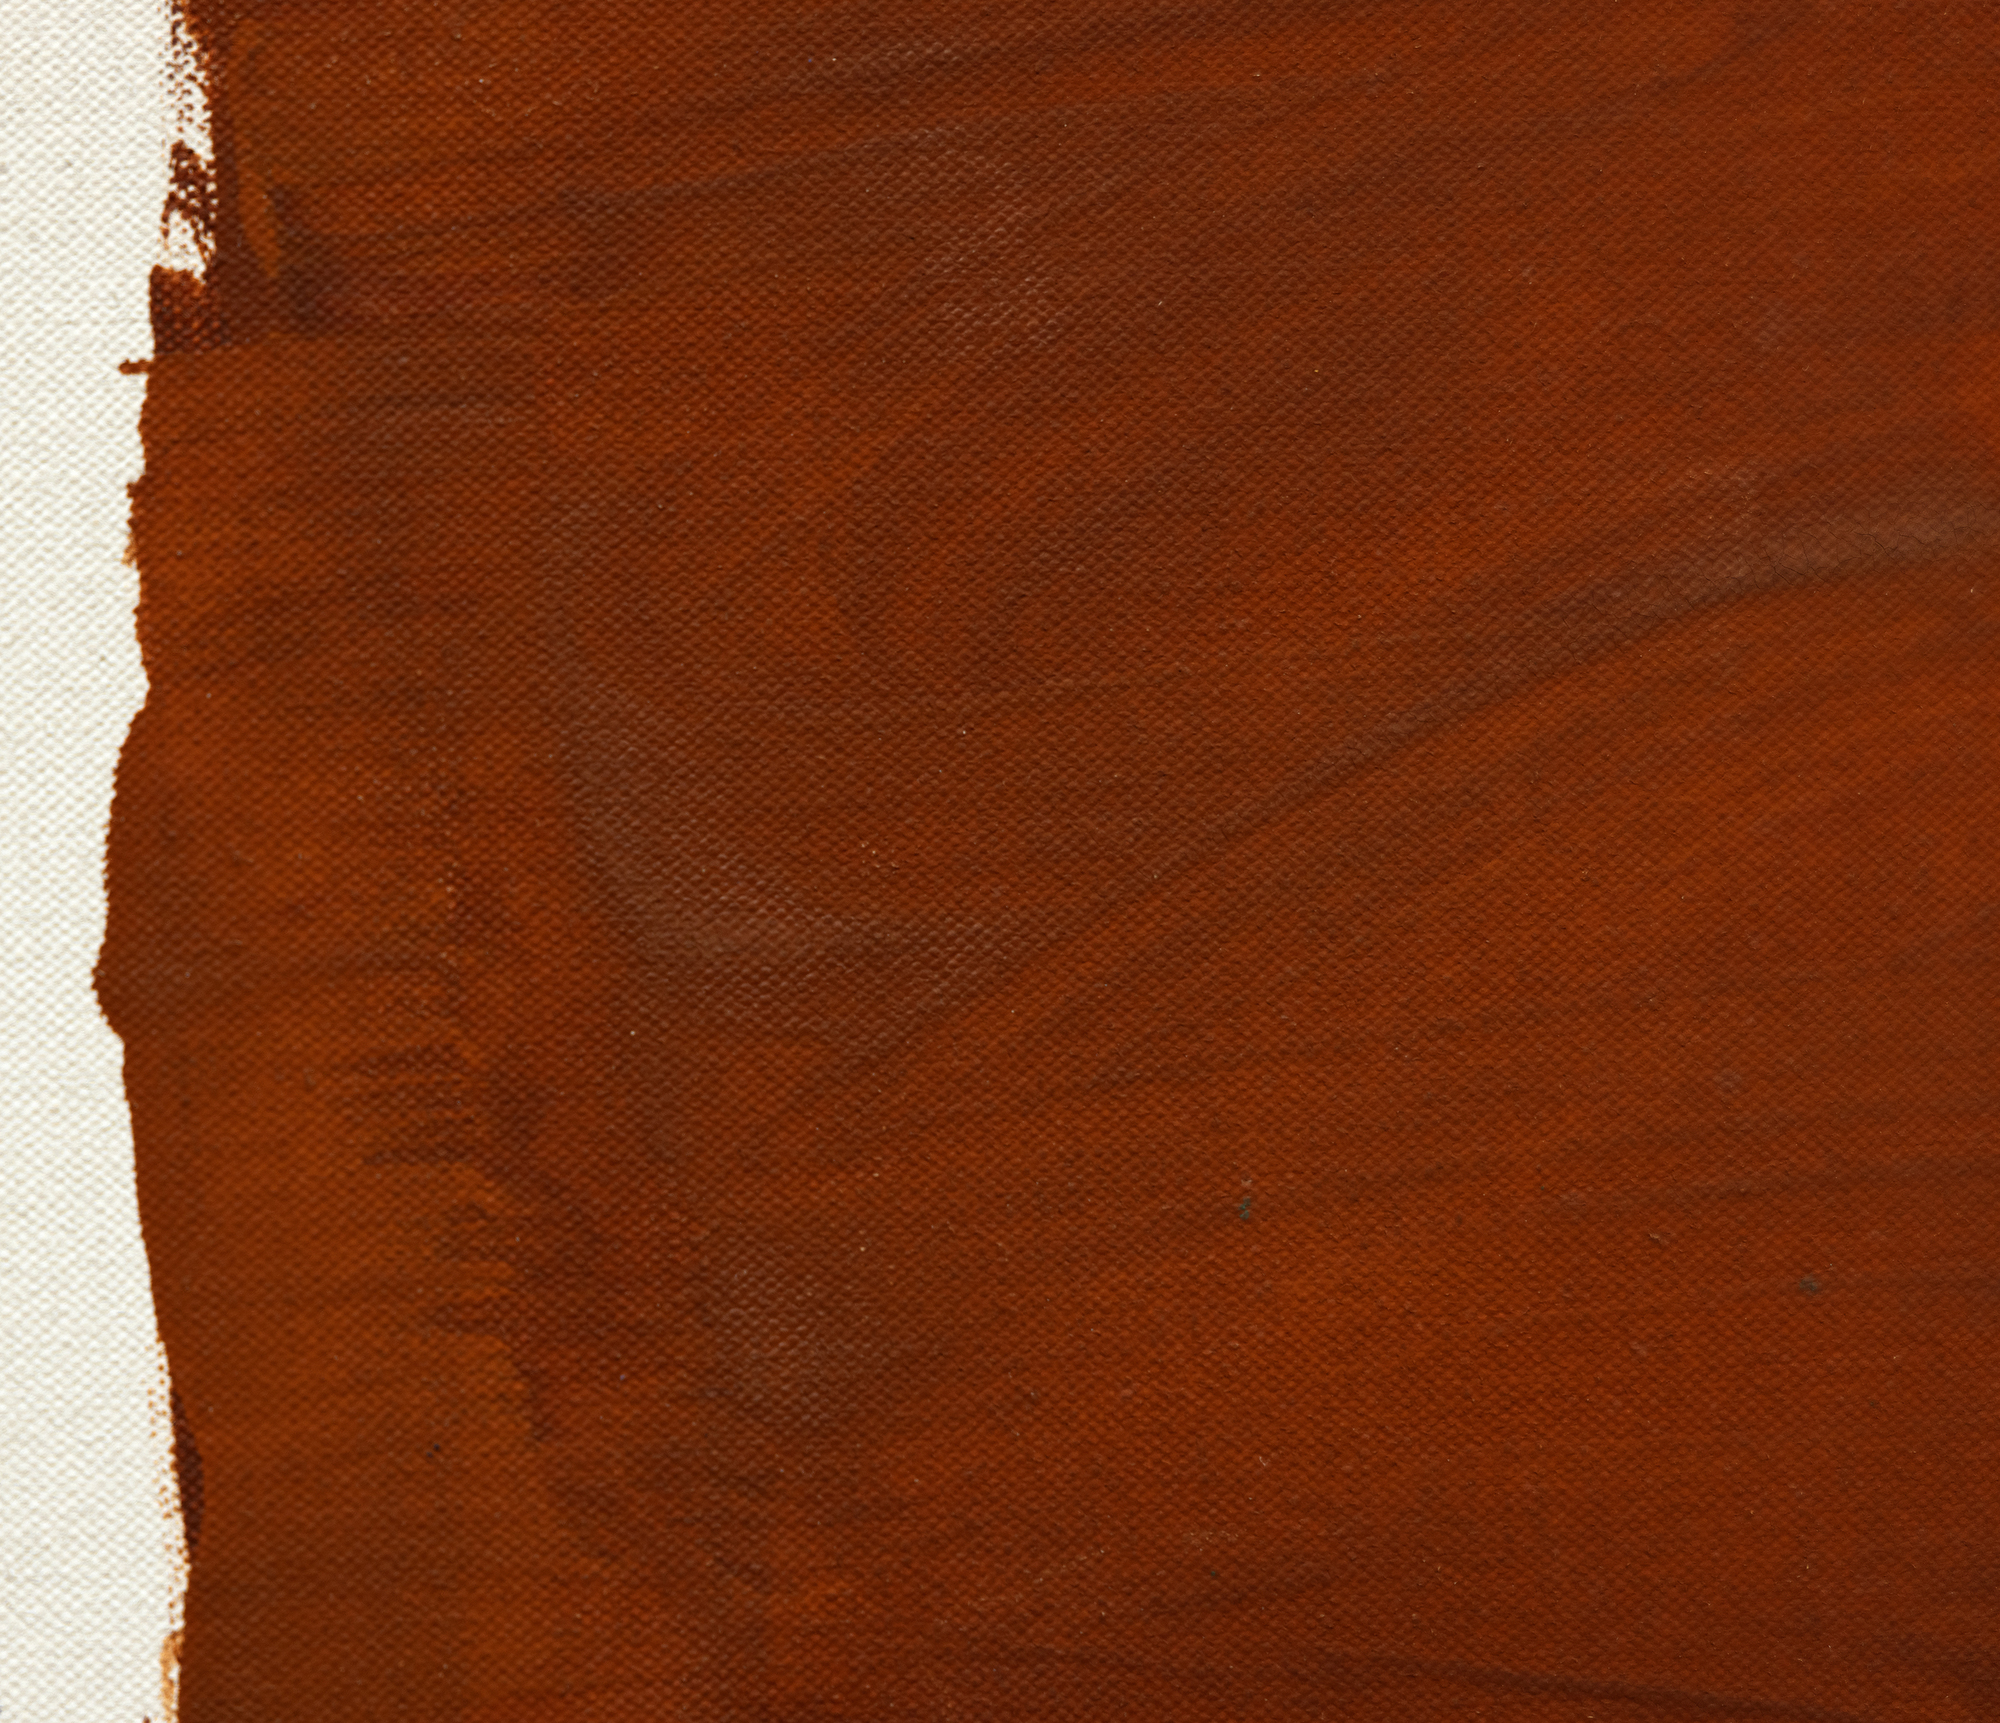 من أواخر خمسينيات القرن العشرين حتى منتصف ستينيات القرن العشرين ، مساهمات راي باركر في وقت مبكر للوحة حقل اللون تبرز بشكل ملحوظ لجودتها نابضة بالحياة وجديدة. رتب باركر كتلتين أو أكثر من كتل الألوان القوية ذات الحواف الخشنة باستخدام تقنية قوية وفرشاة على لوحات كبيرة معدة بجيسو. تظهر هذه الكتل ، المقدمة بألوان مشبعة ولكنها نابضة بالحياة بمهارة ، طاقة مميزة. في حين أن مؤلفات باركر قد تذكر أحد روثكو ، فإن كيفية توصيل اللون - بقوة وقوة - تميزهما. مع الحفاظ على النطاق الكبير والديناميكية لمدرسة نيويورك ، يتباعد عمل باركر من خلال التخلي عن الكثافة العاطفية المرتبطة غالبا بالتعبيرية التجريدية ويحتضن رؤية للحركة خالية من رثائها النموذجي.